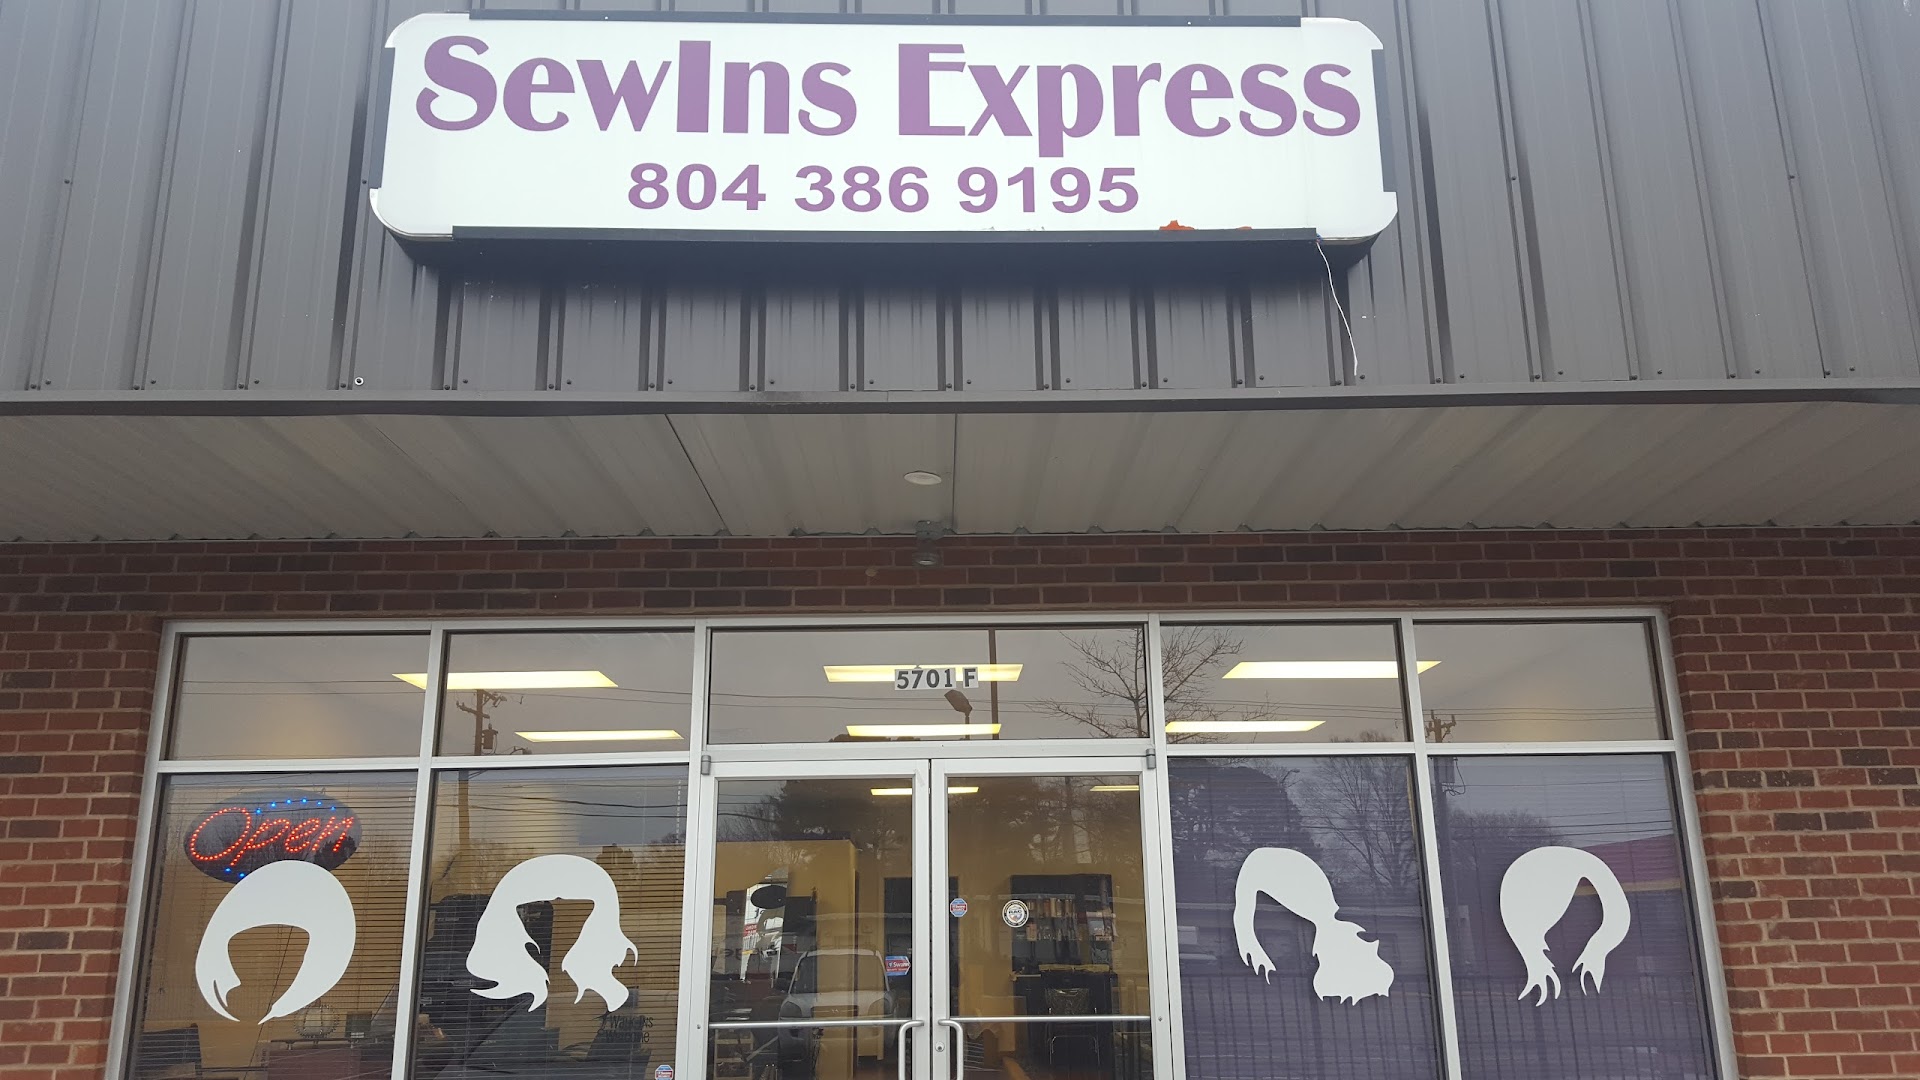 SewIns Express